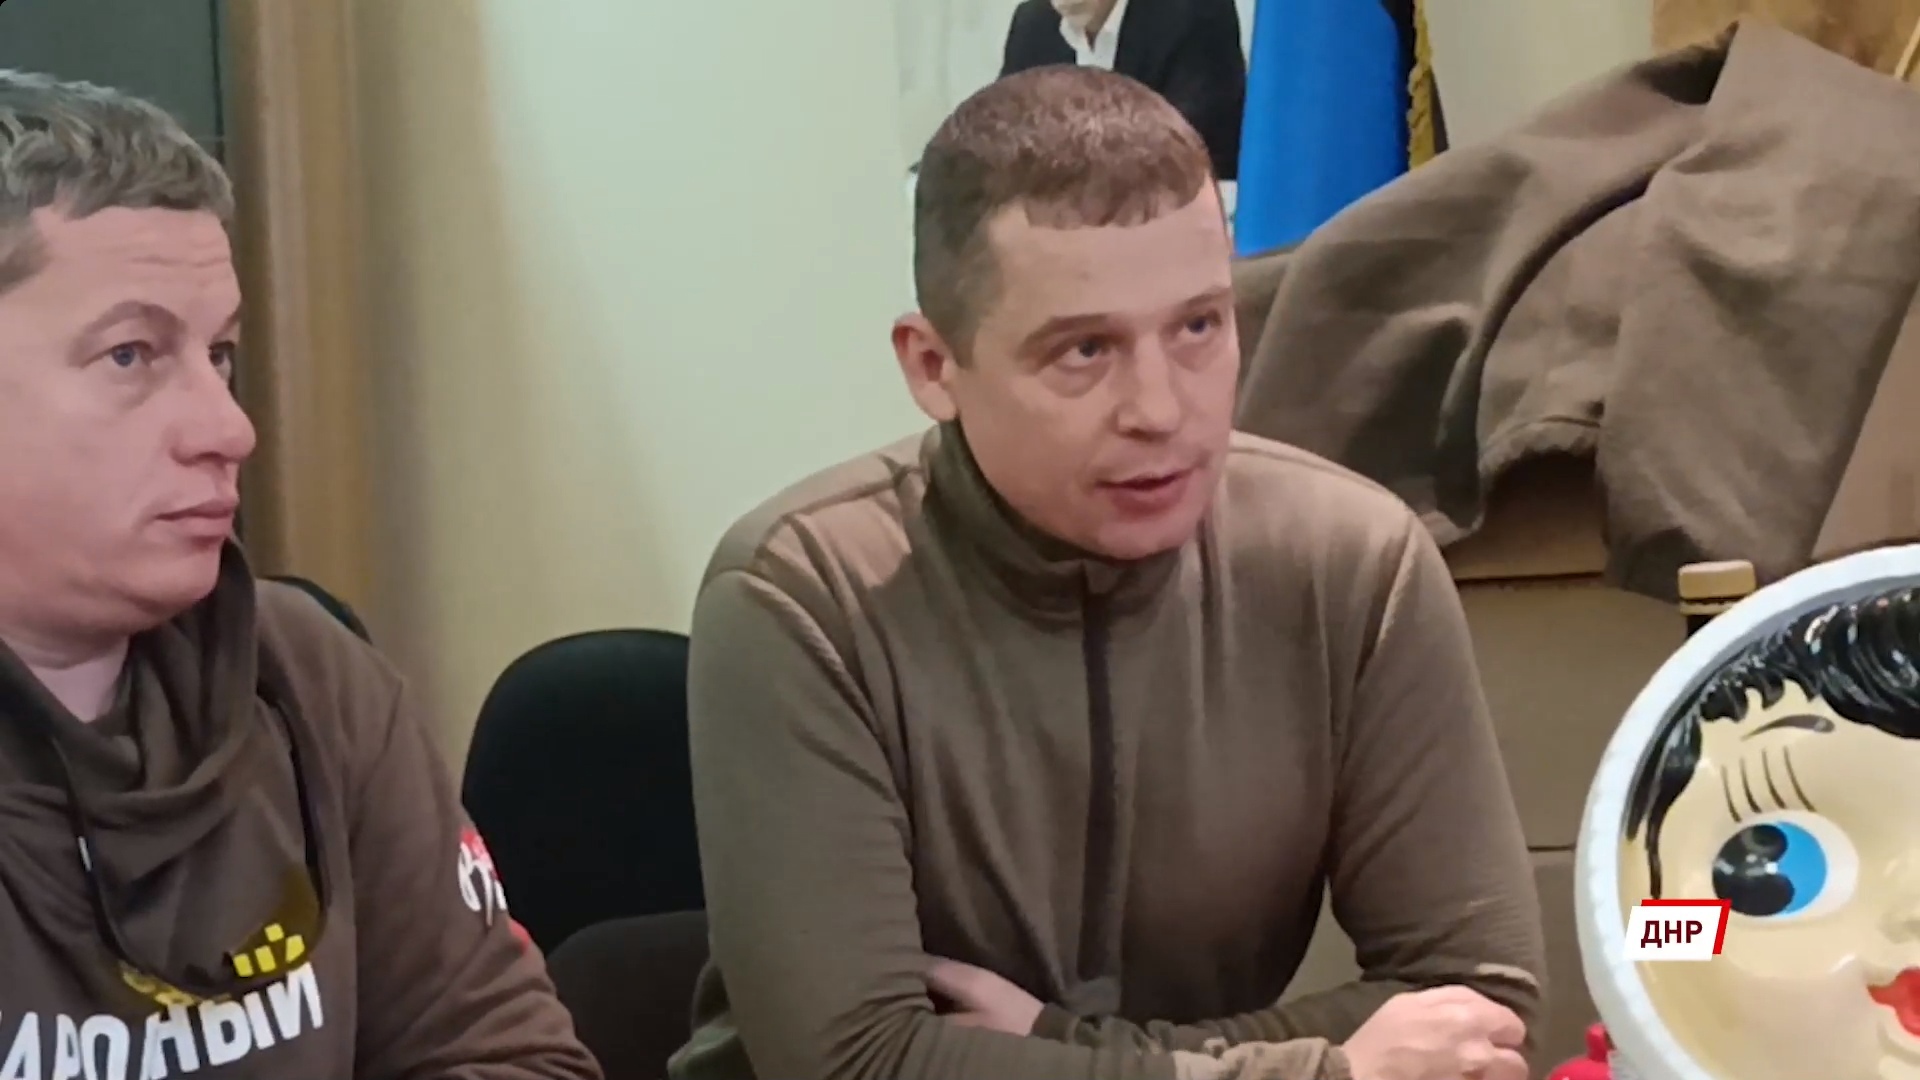 Ярославцы рассказали о встрече с участниками и руководителями патриотических движений в Донецке